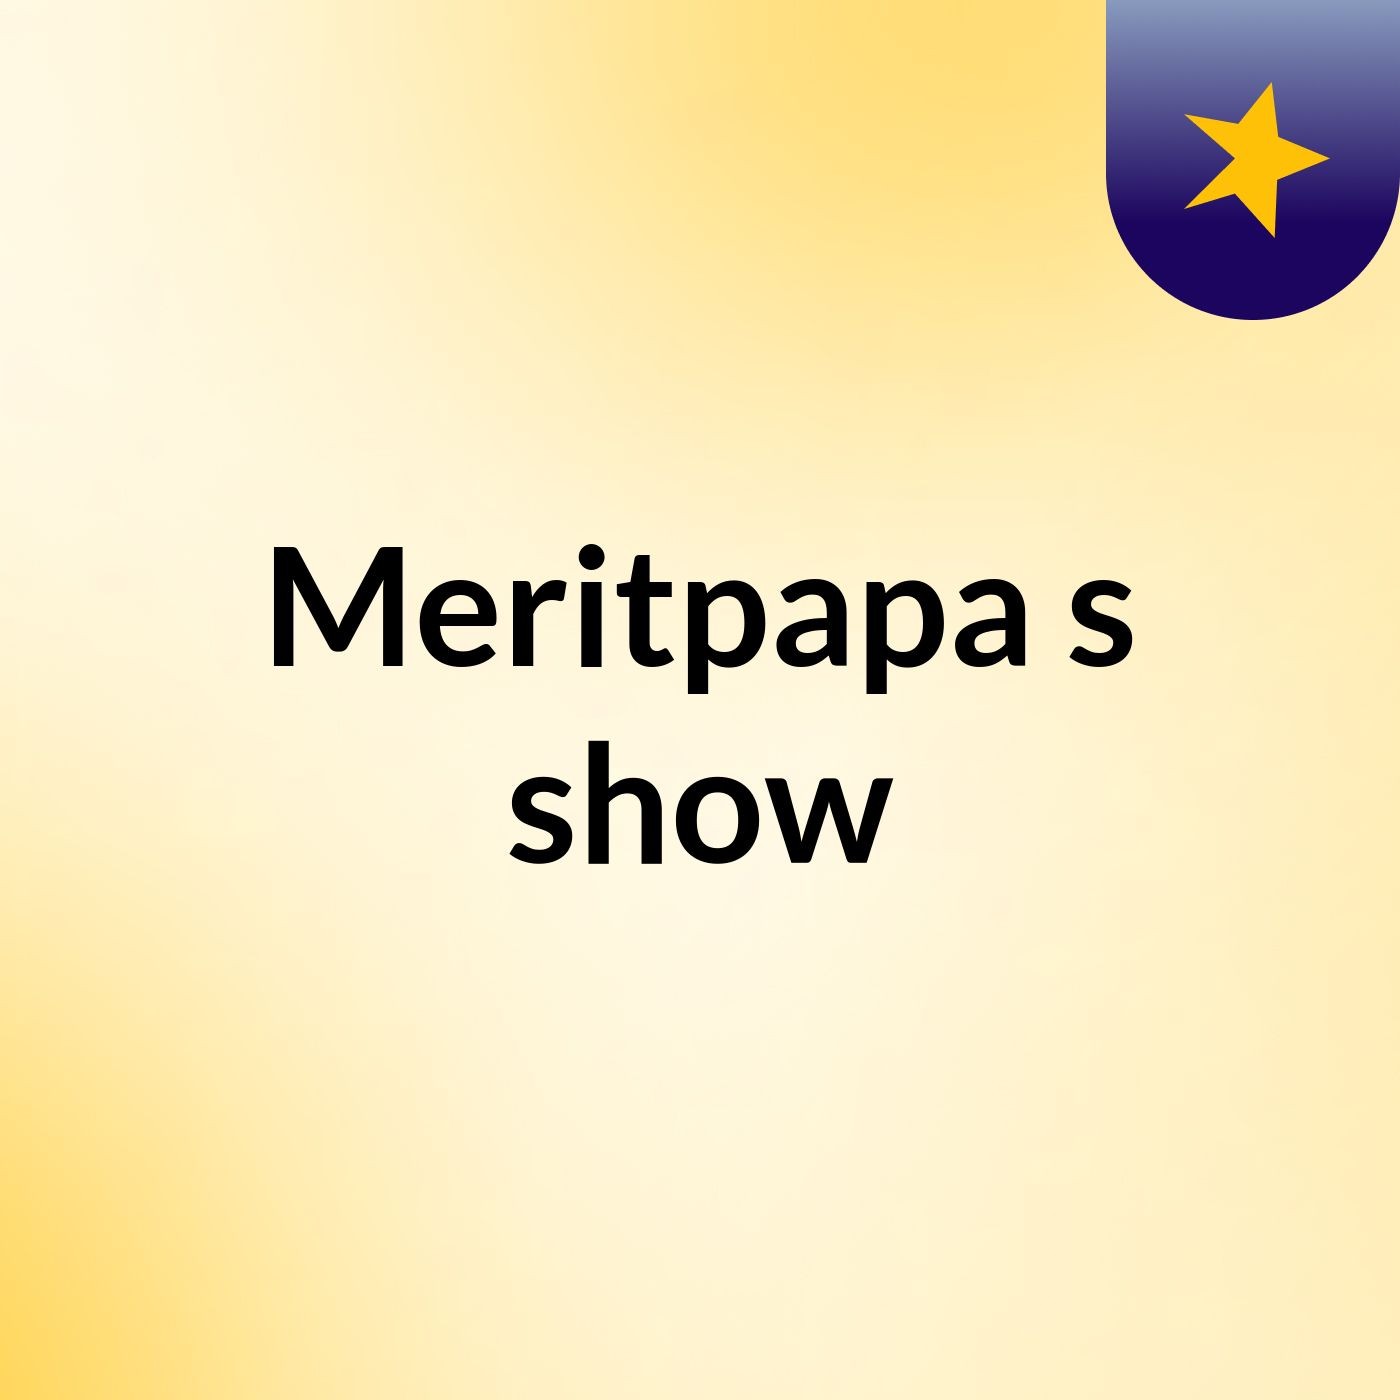 Episode 4 - Meritpapa's show